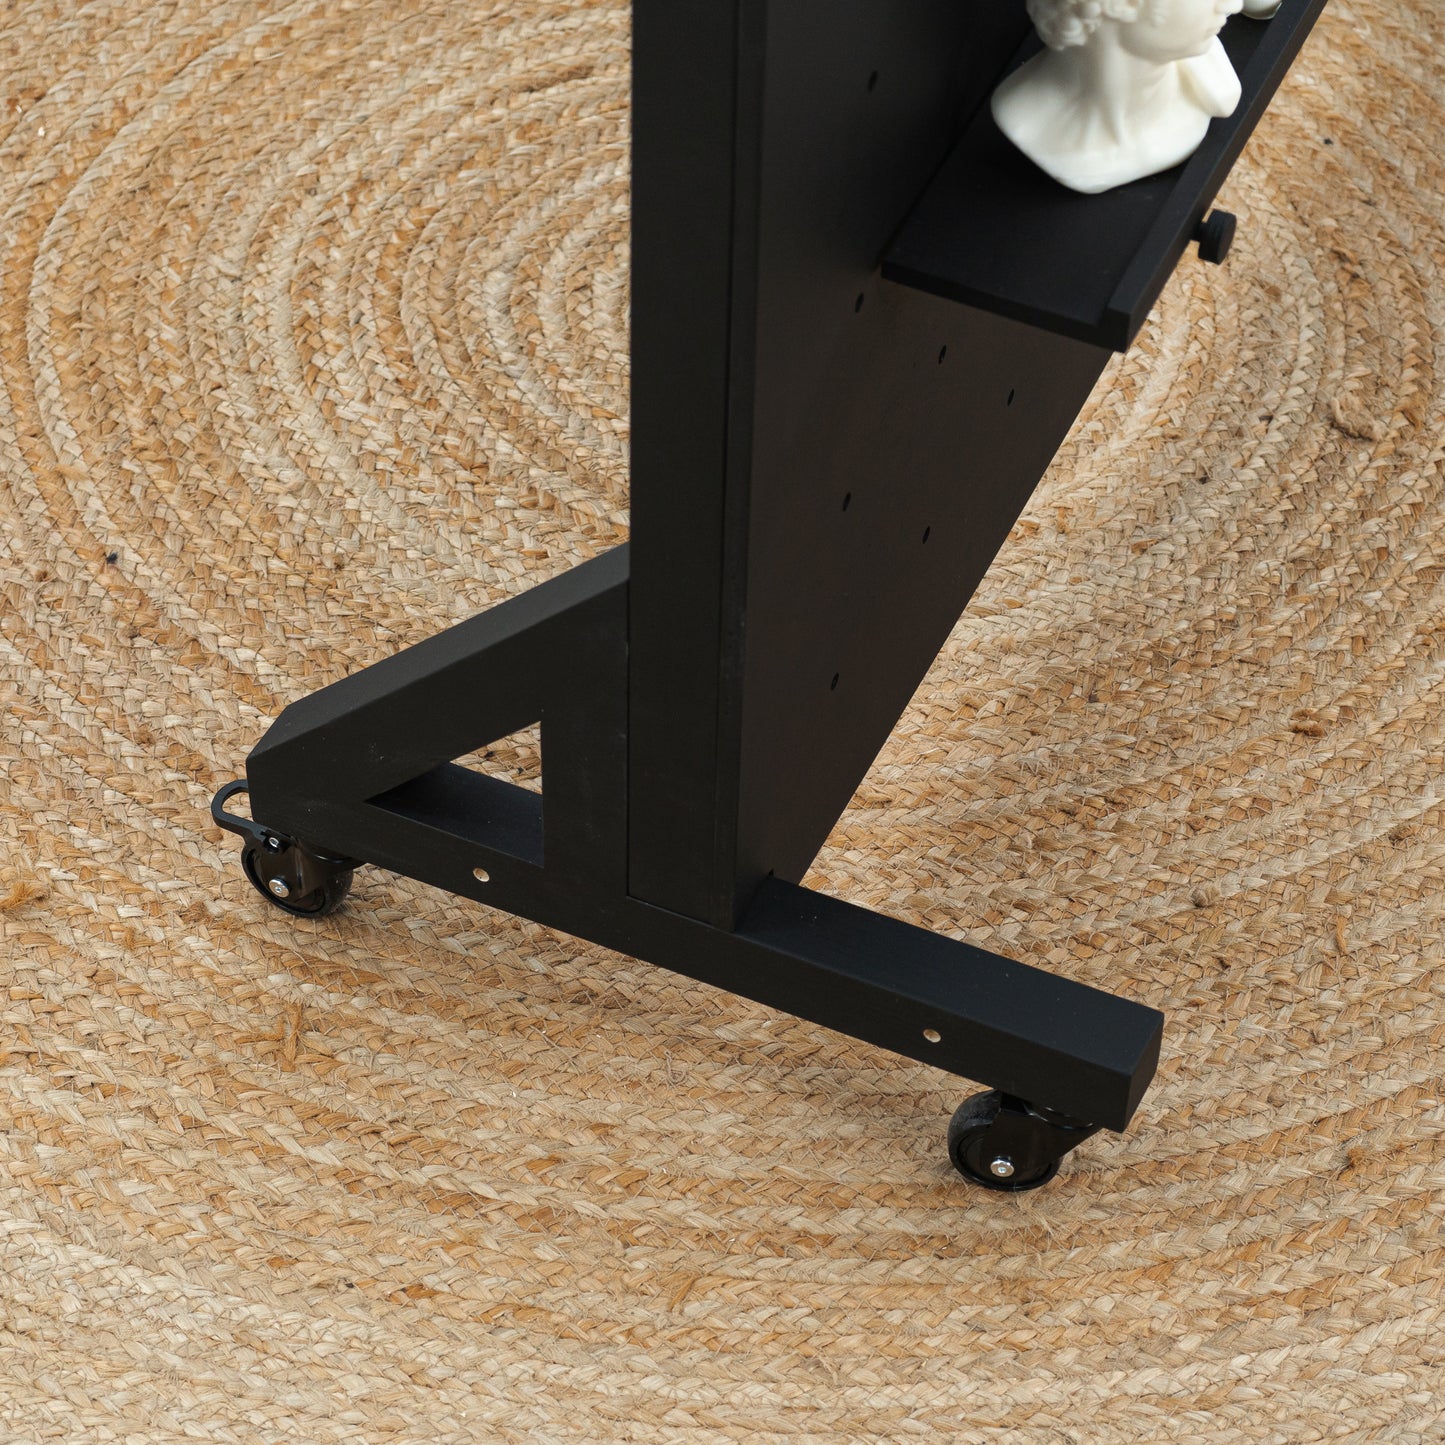 Display-Stecktafel VP-05-W-BL in schwarzer Farbe für Schmuck und Accessoires, auf Rollen, zusammenklappbar für den Einsatz auf Messen